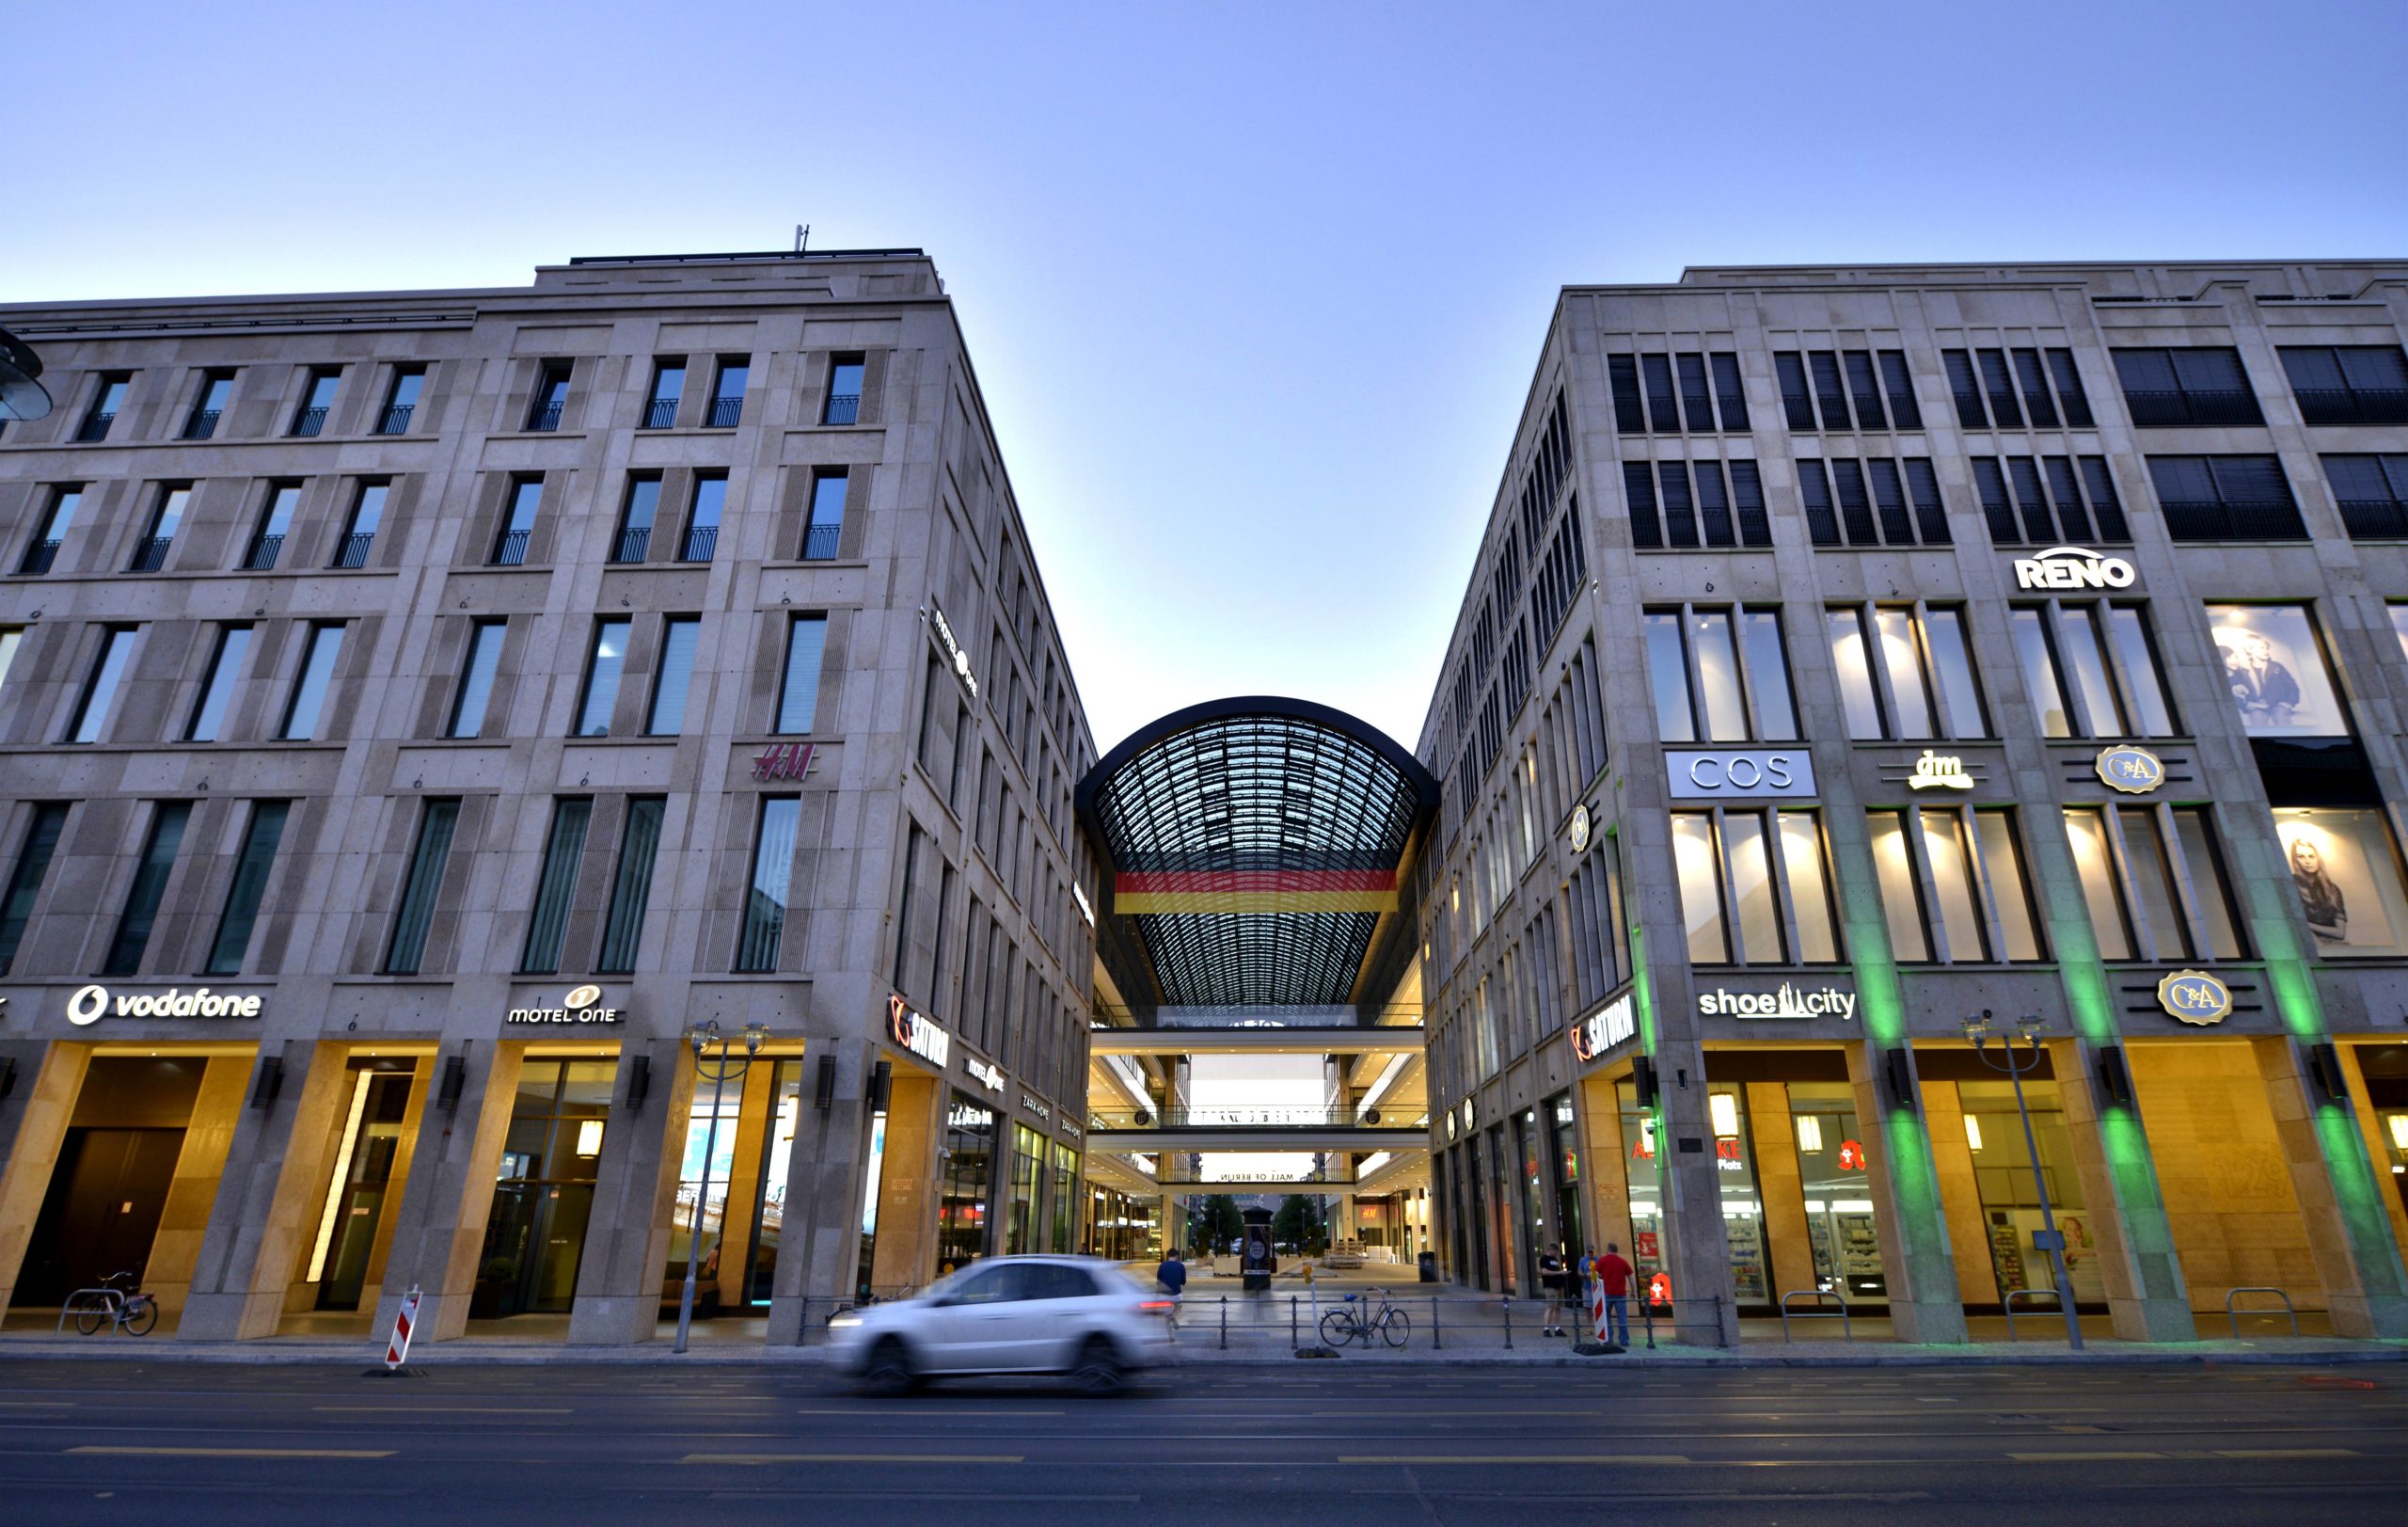 shoppen in Mitte Für 800 Millionen Euro entstand in Berlin-Mitte bis 2014 die Mall of Berlin. Mit über 270 Geschäften und einer Gesamtfläche von über 200.000 Quadratmetern ist die Mall das größte Warenhaus Europas.